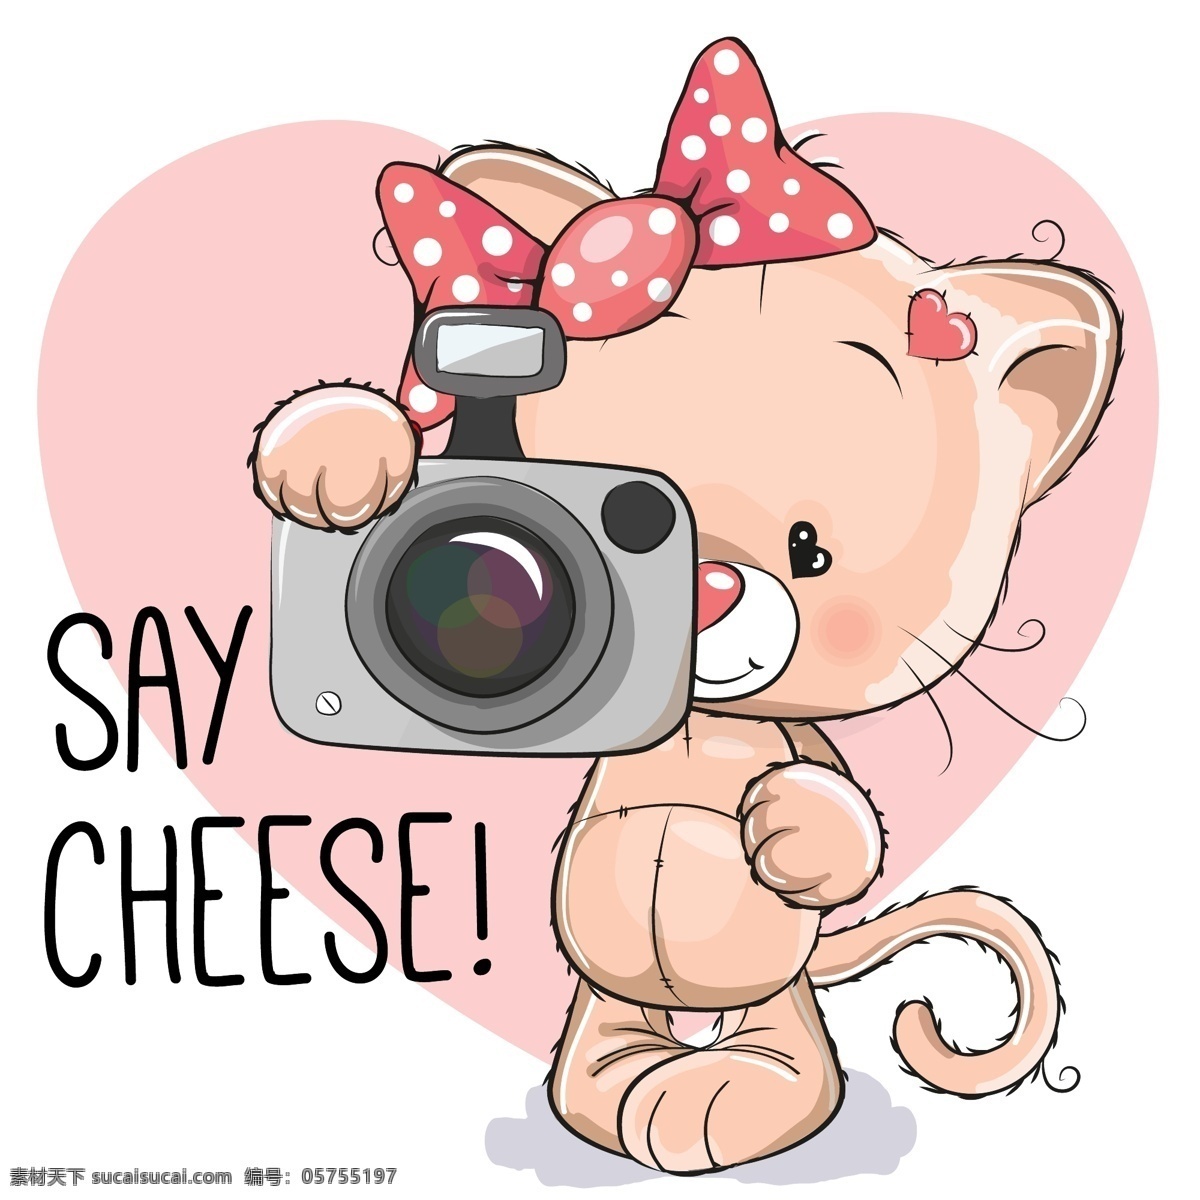 可爱卡通形象 蝴蝶结 猫咪 卡通猫 相机 拍照 底纹背景 卡通背景 粉红色可爱 卡通设计